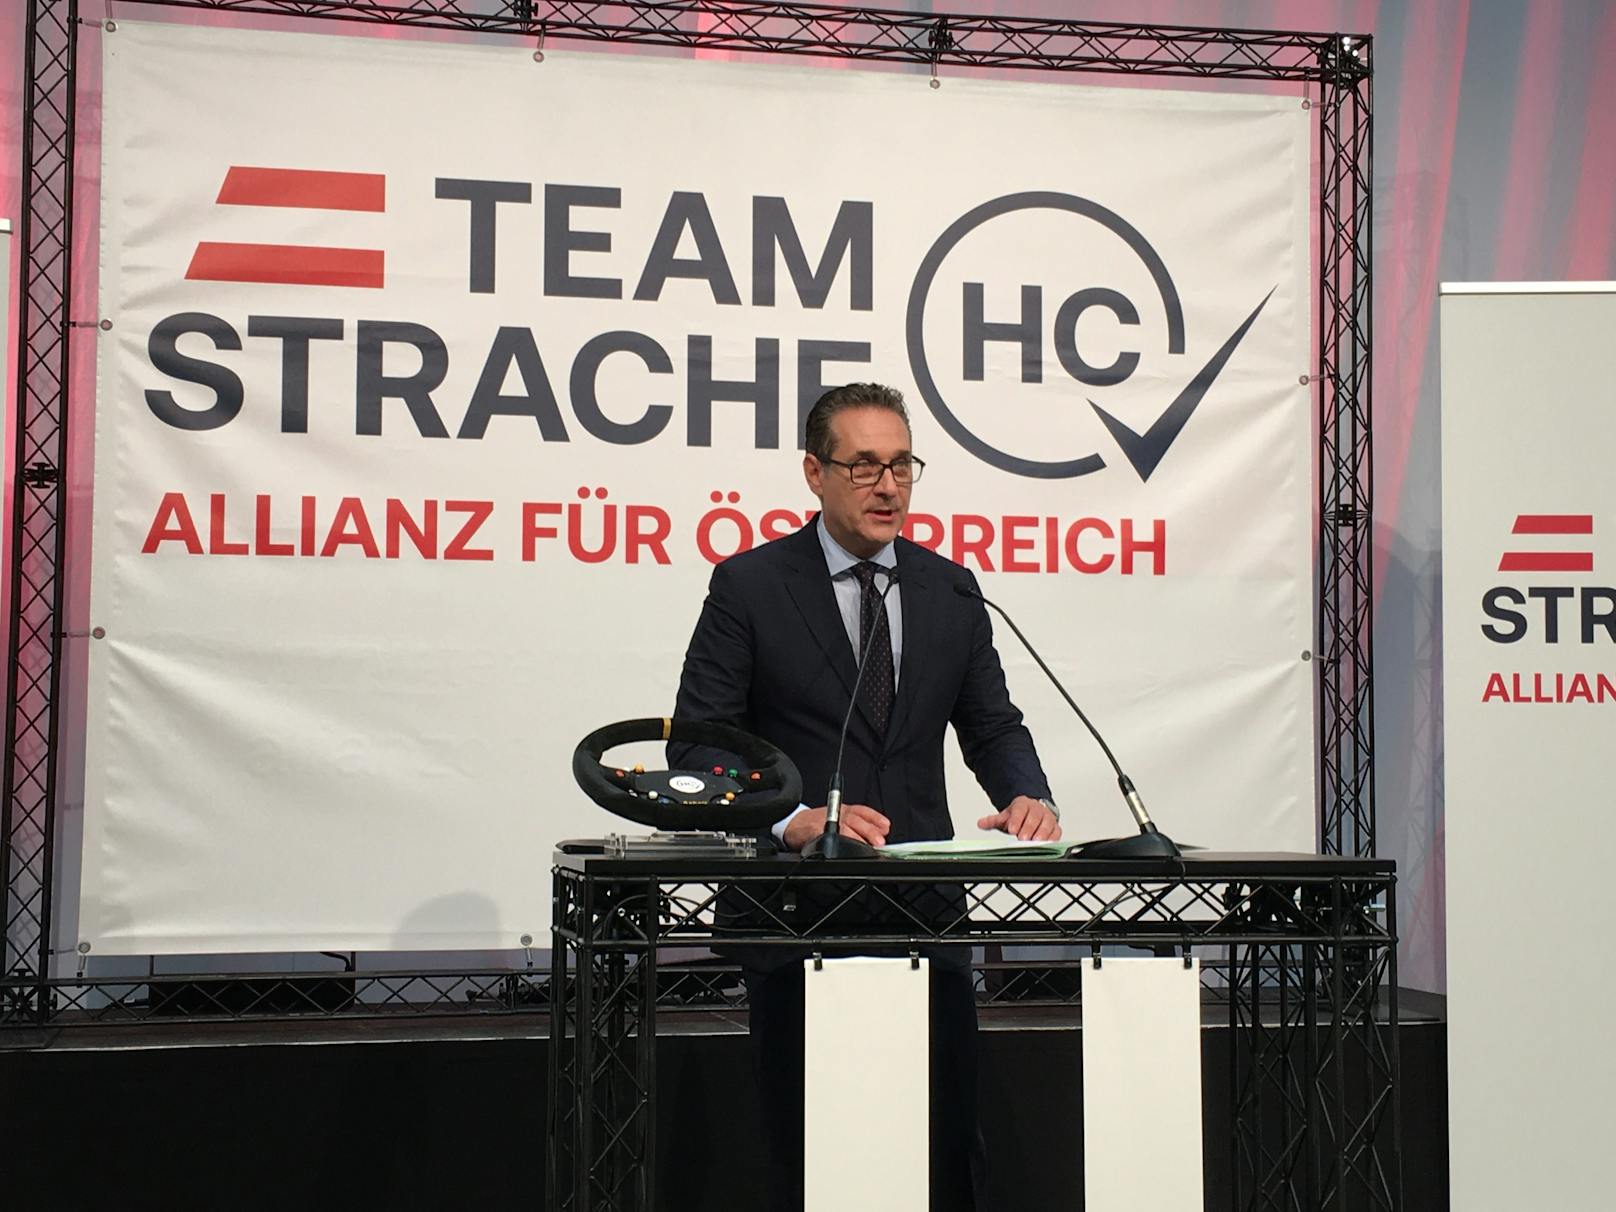 Der ehemalige Vizekanzler Heinz-Christian Strache hat eine neue Partei, das "Team HC Strache".